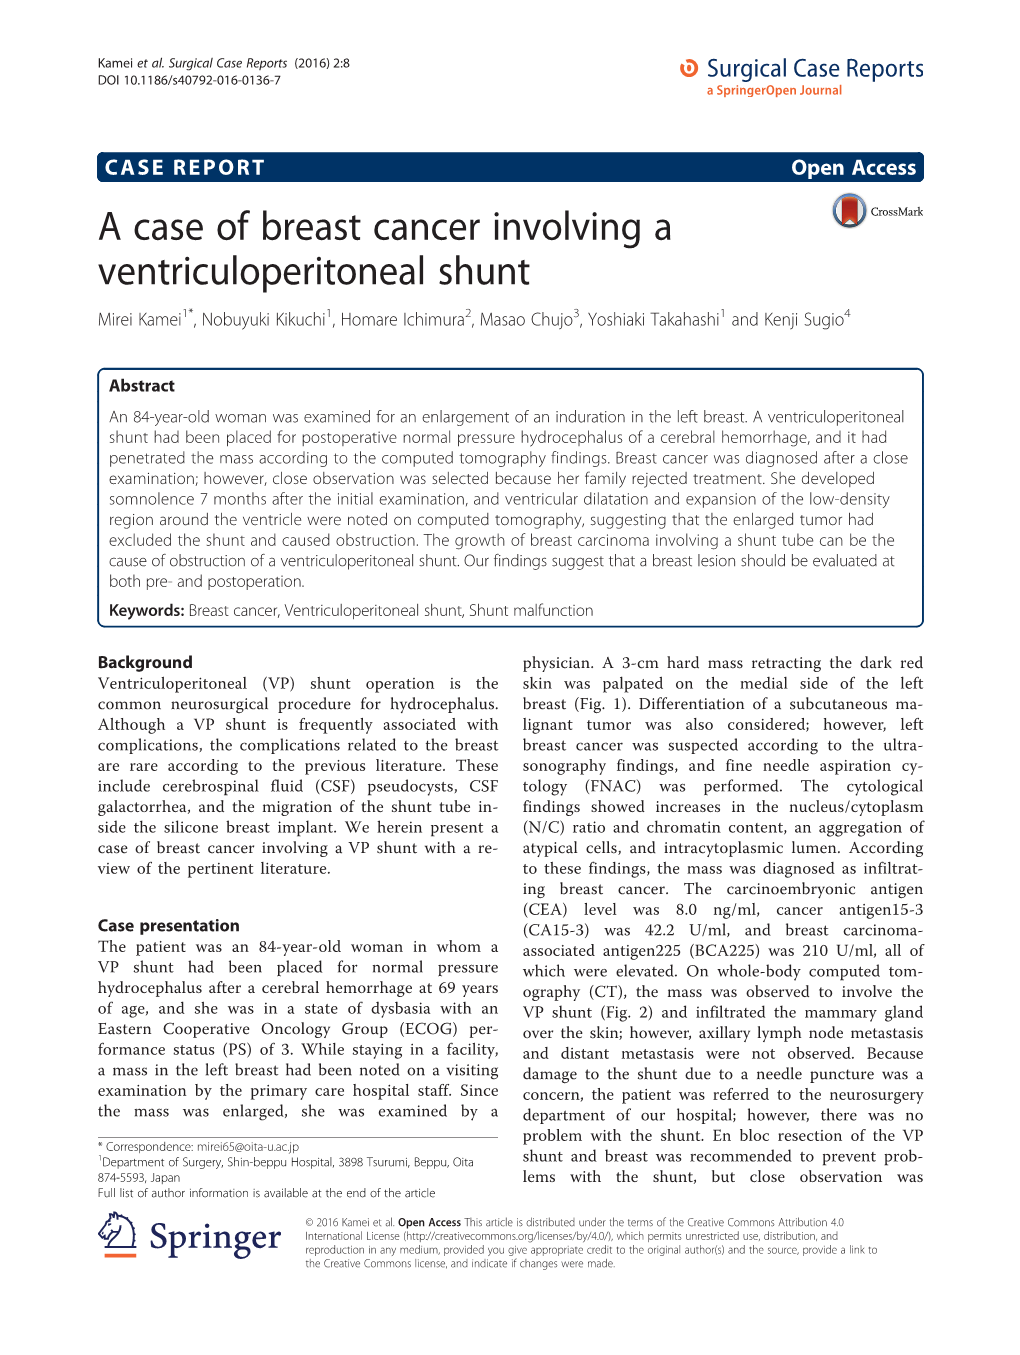 A Case of Breast Cancer Involving a Ventriculoperitoneal Shunt Mirei Kamei1*, Nobuyuki Kikuchi1, Homare Ichimura2, Masao Chujo3, Yoshiaki Takahashi1 and Kenji Sugio4